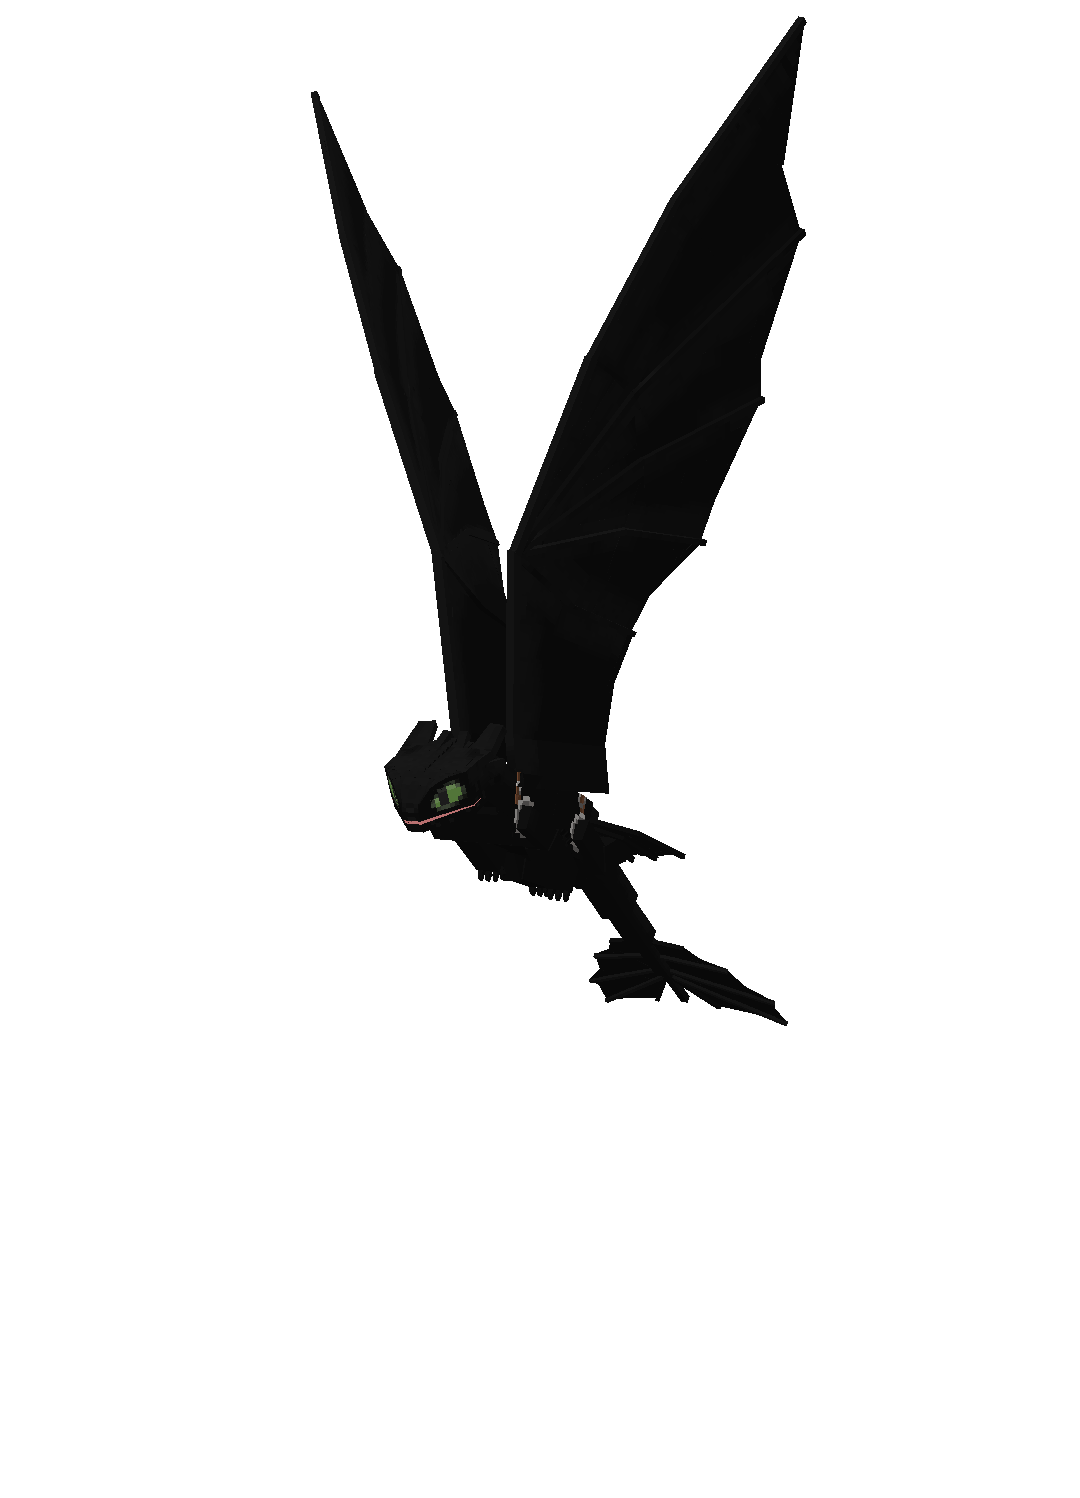 Черный худой дракон машет крыльями